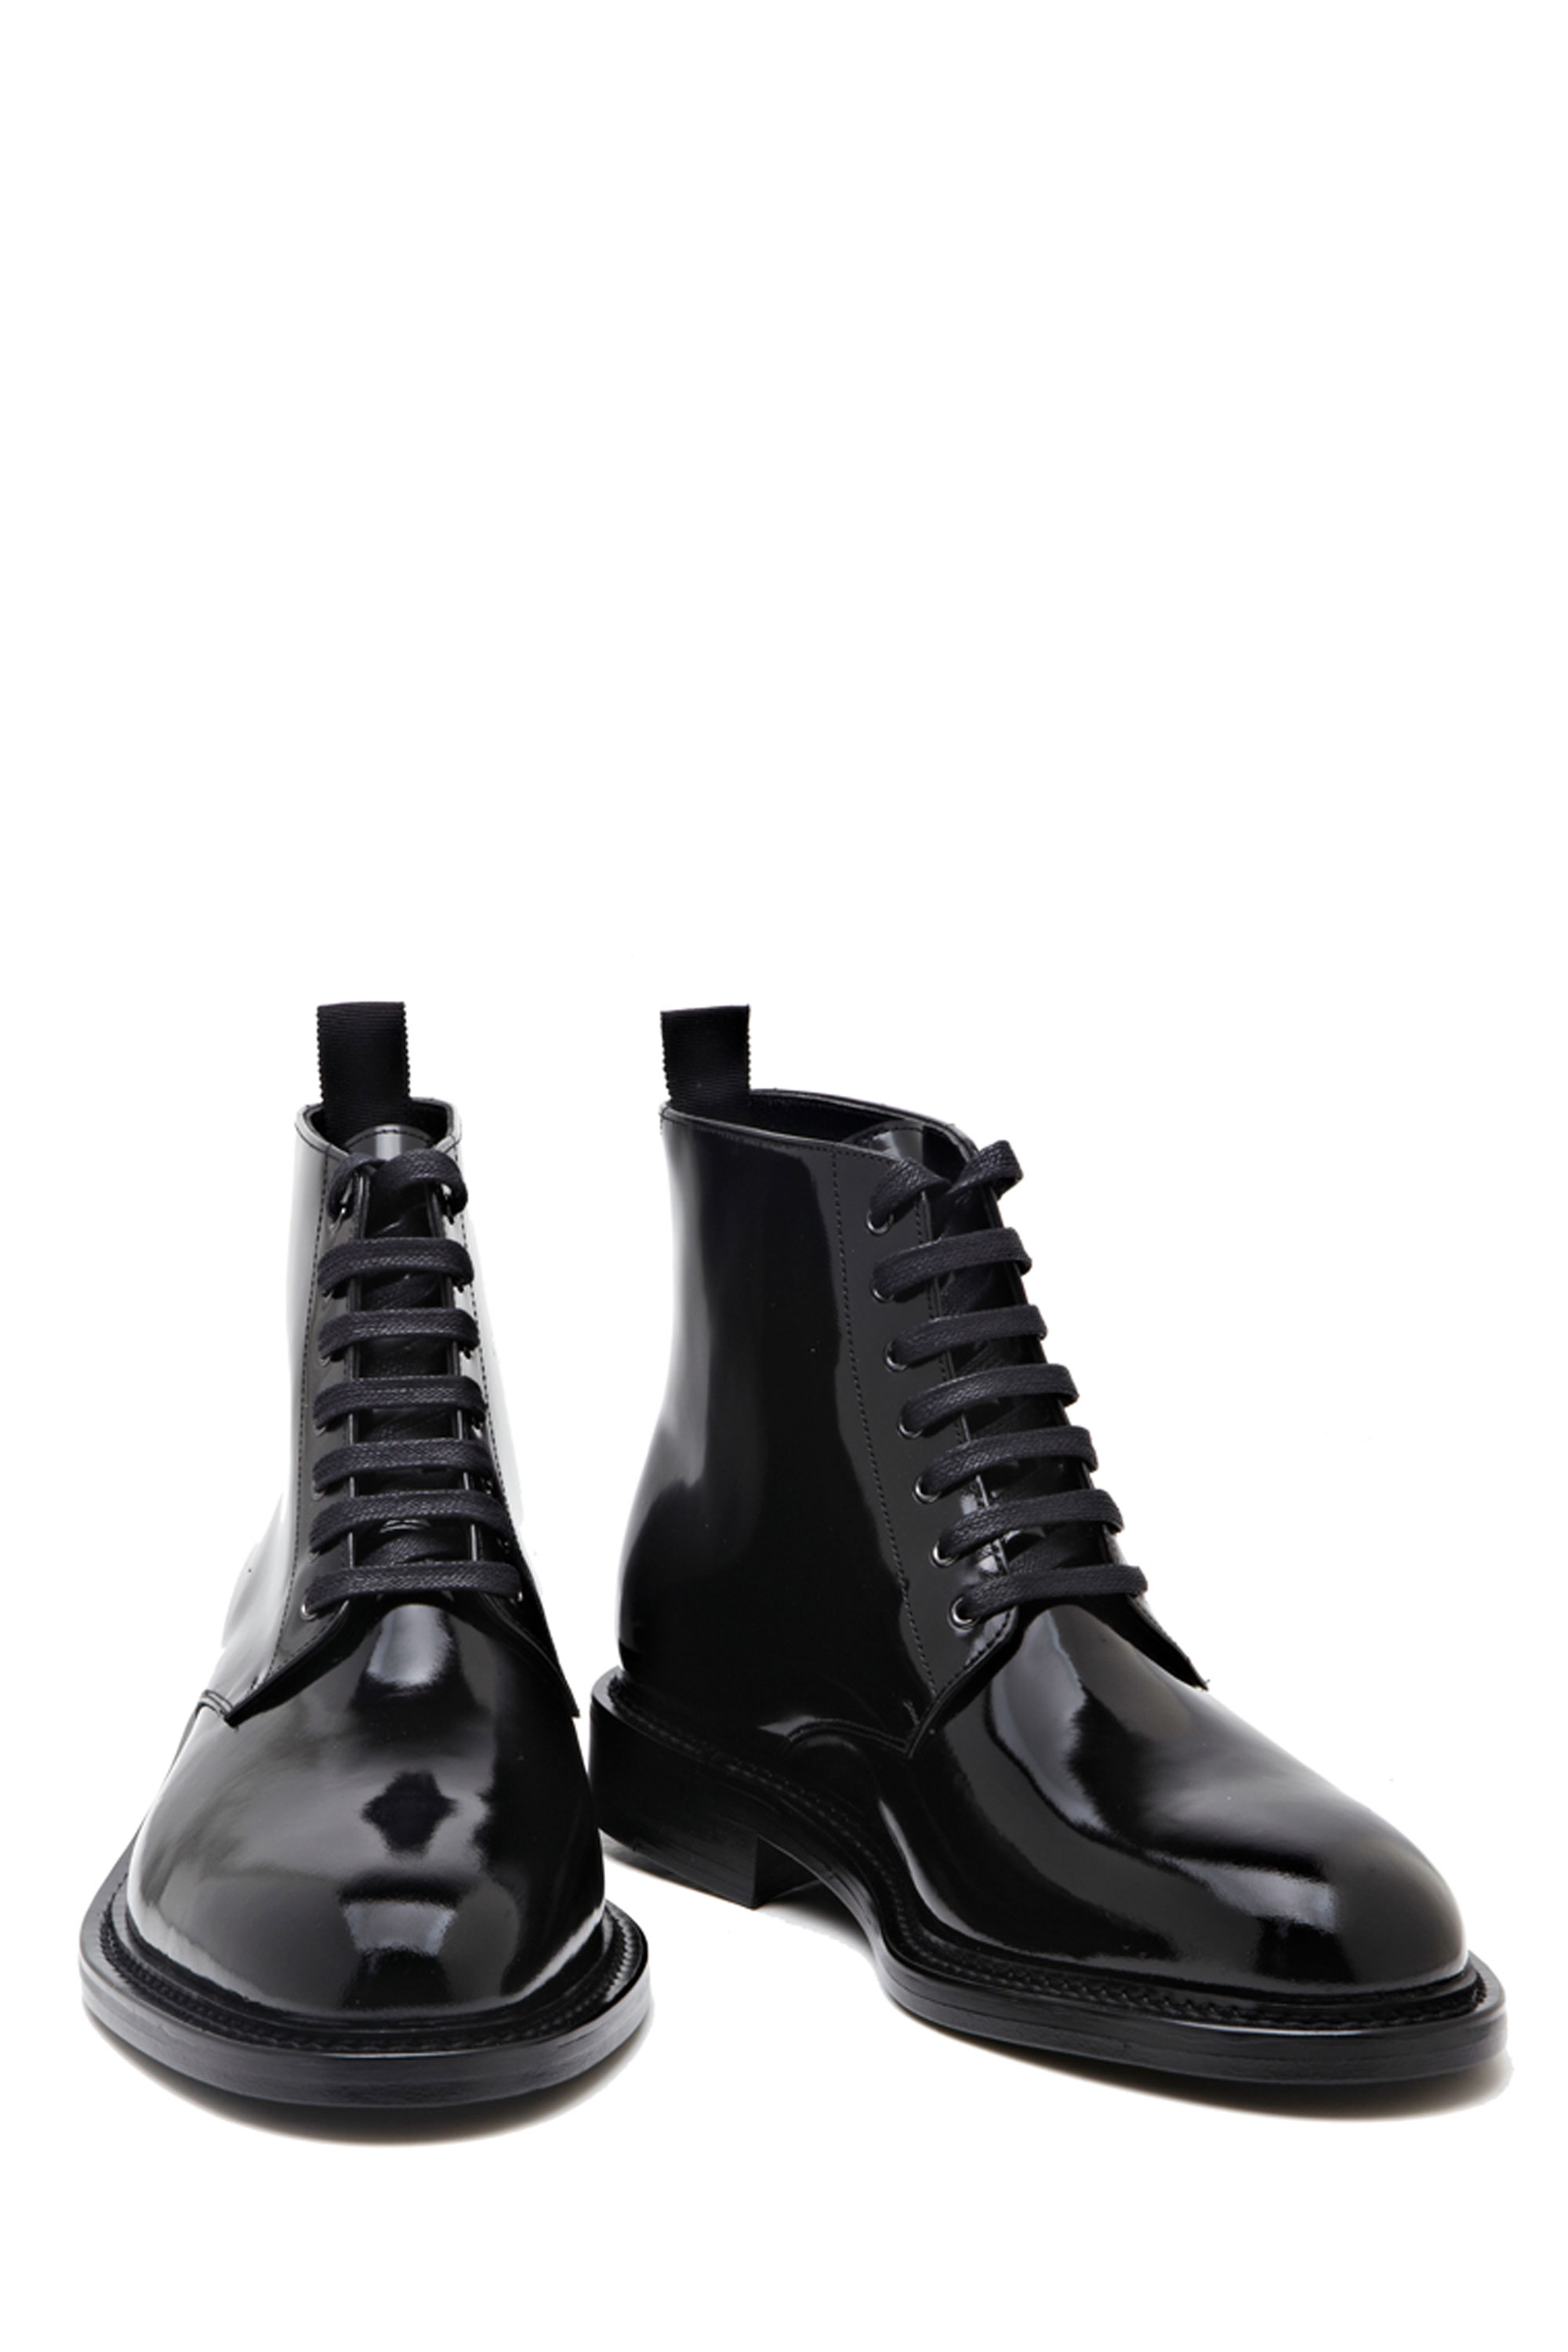 Saint lauren* laceup boots